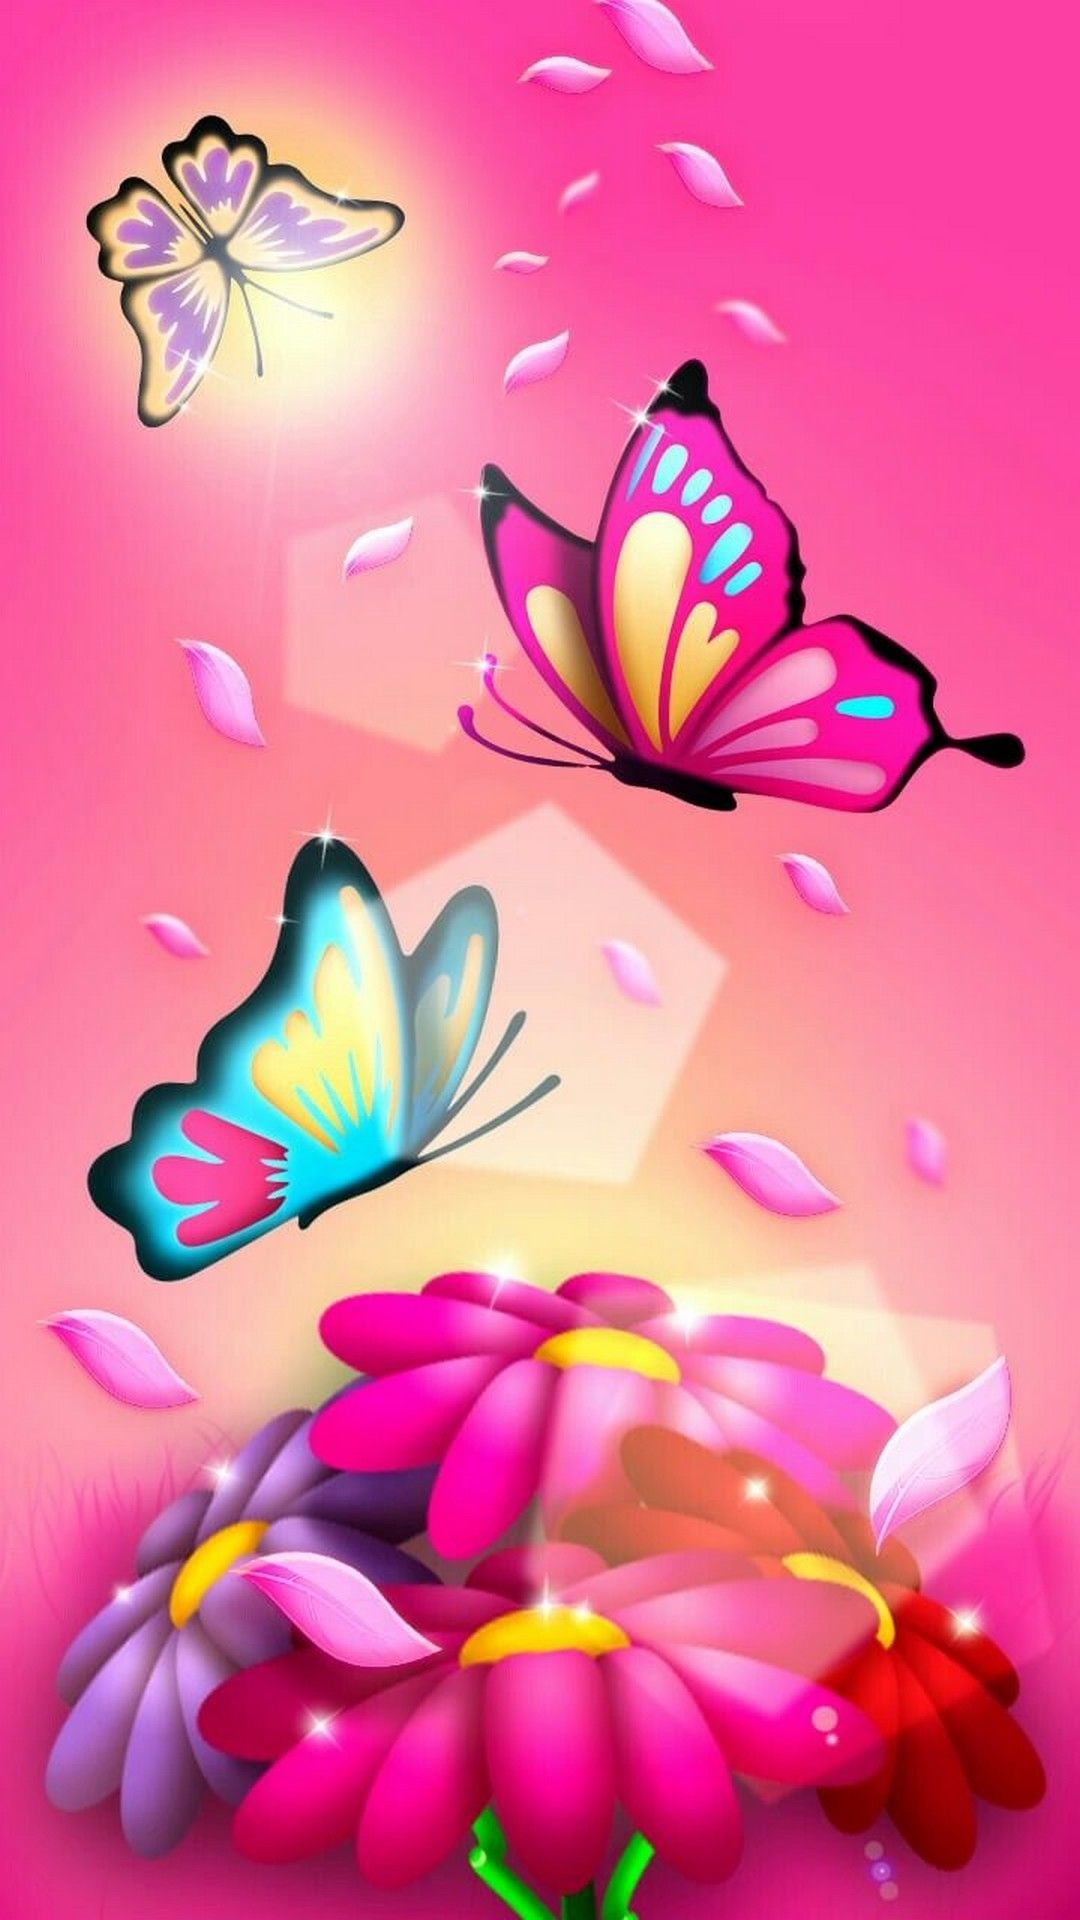 Nếu bạn yêu thích bướm hồng tuyệt đẹp, hãy xem ngay hình ảnh của chúng tôi! Những con bướm hồng tươi sáng sẽ làm cho trái tim bạn đập nhanh hơn.